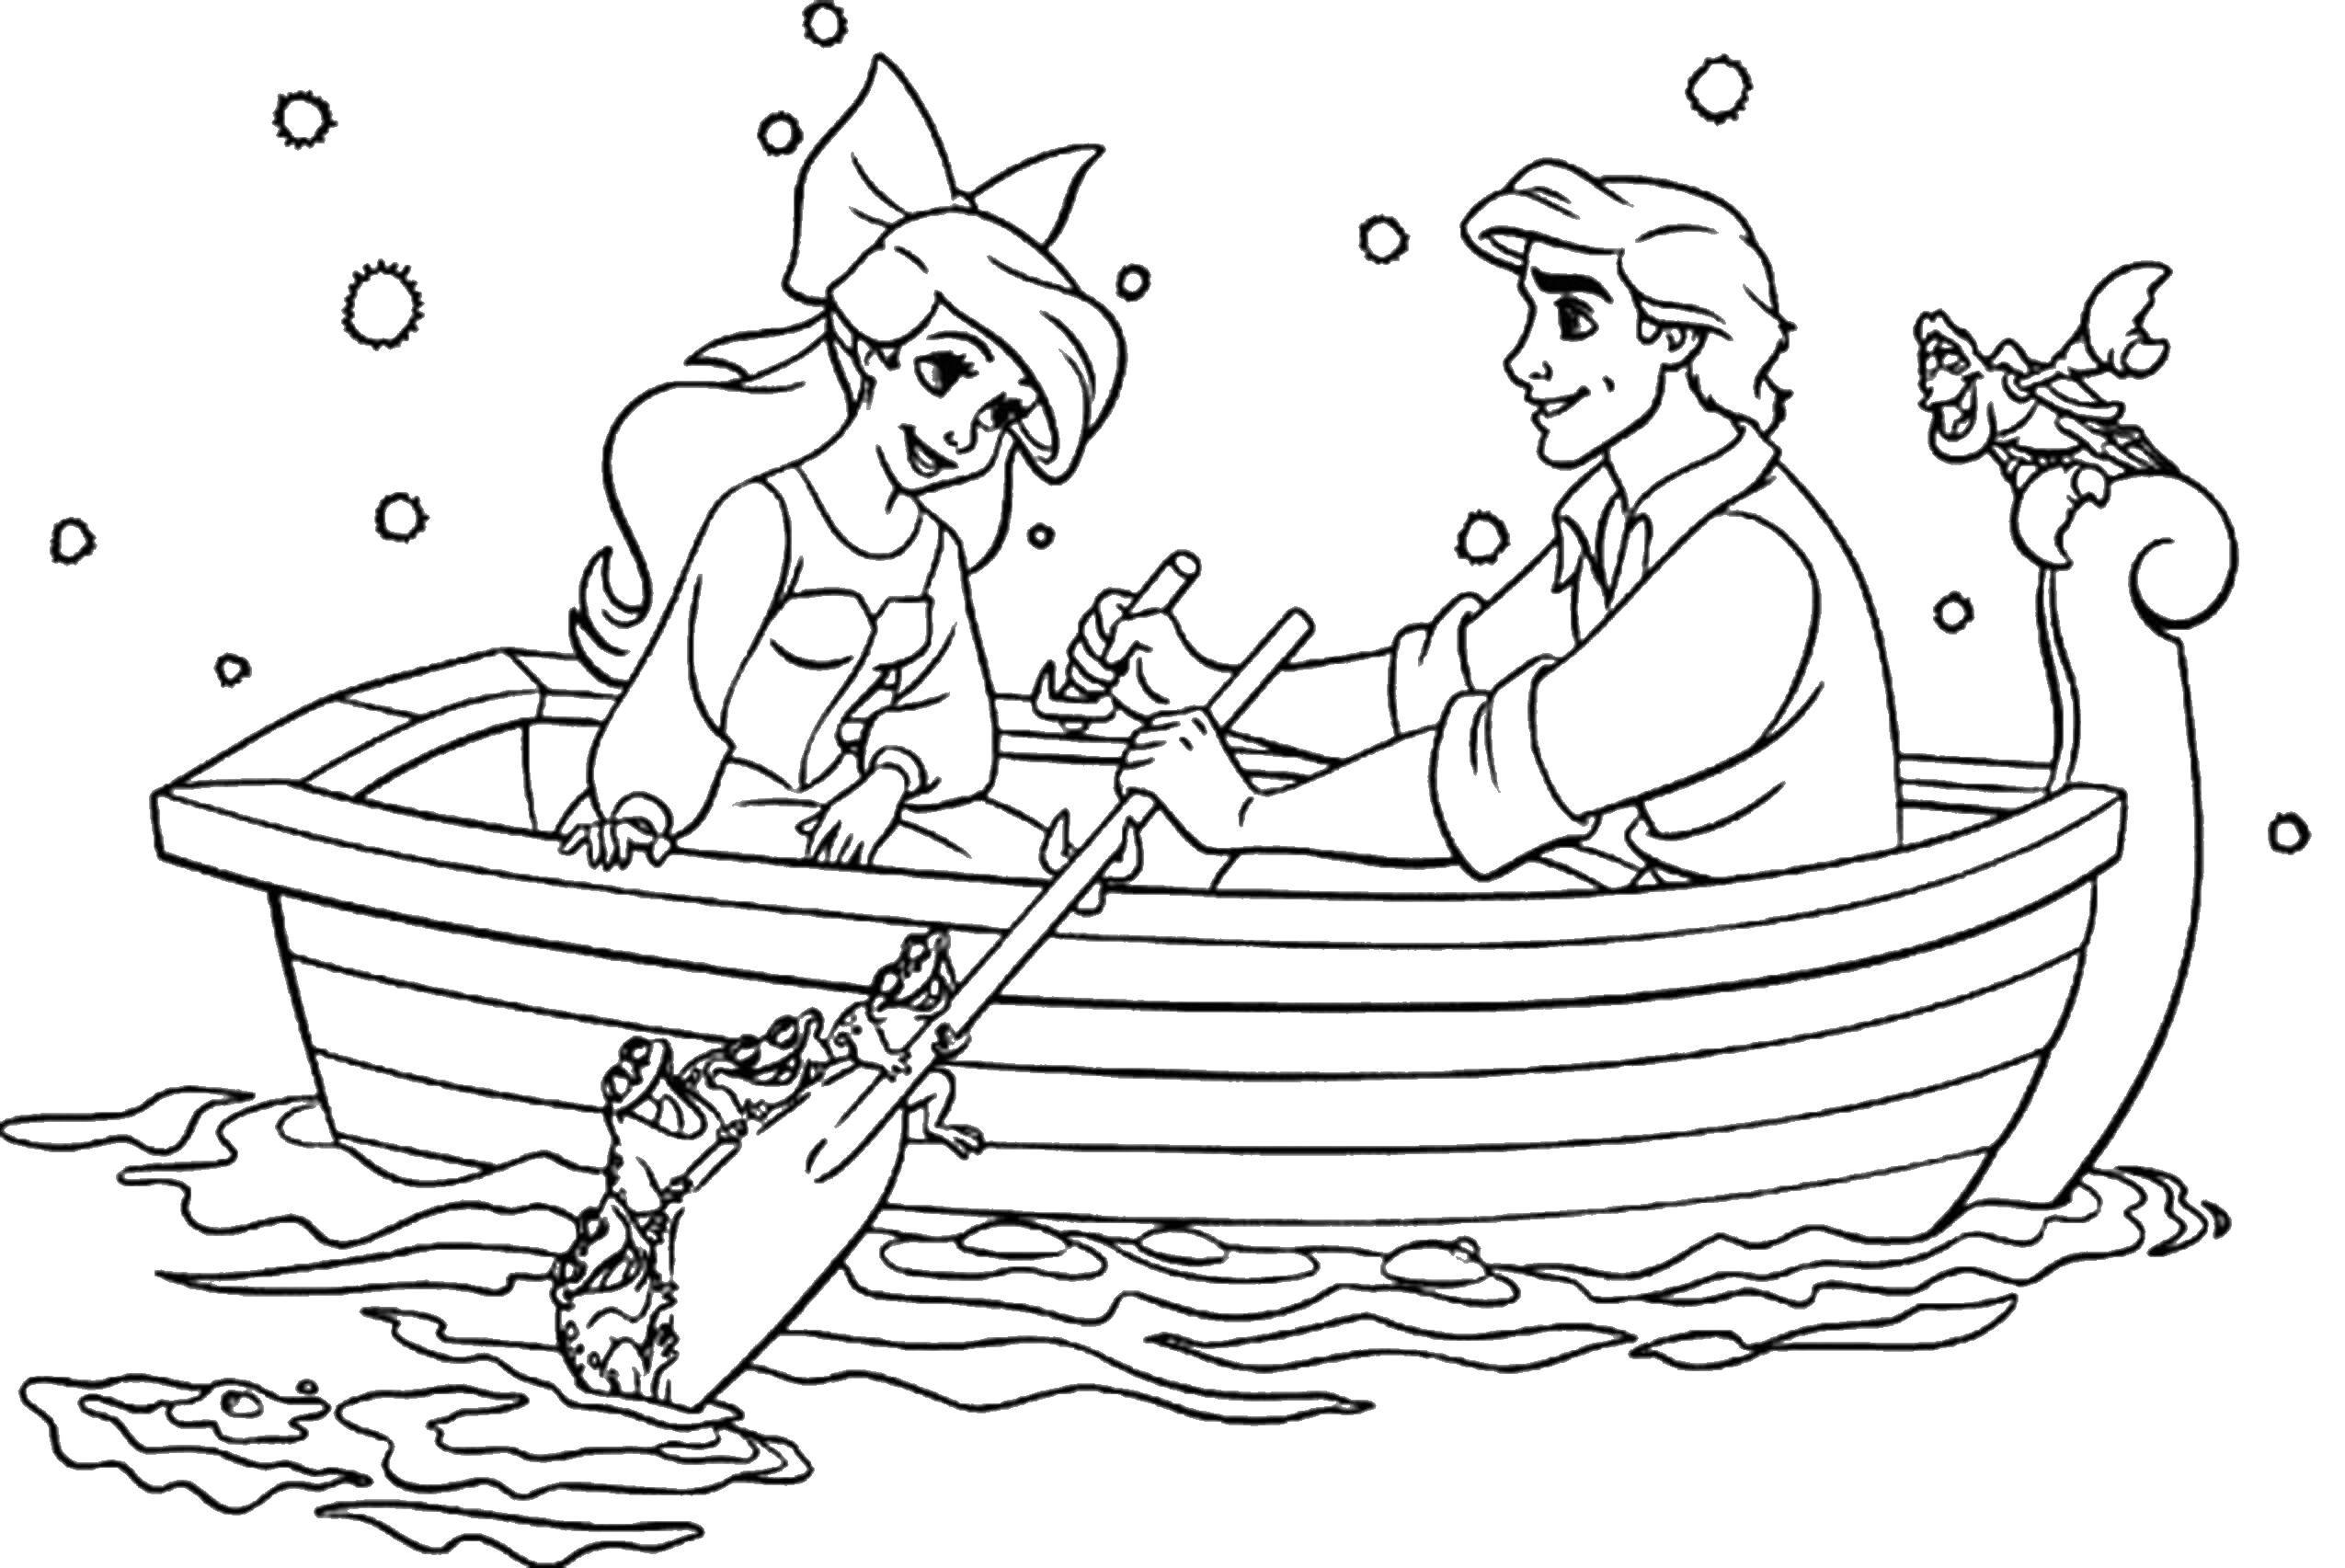 Название: Раскраска Романтическая прогулка по воде. Категория: Диснеевские раскраски. Теги: Дисней, русалочка, Ариэль.